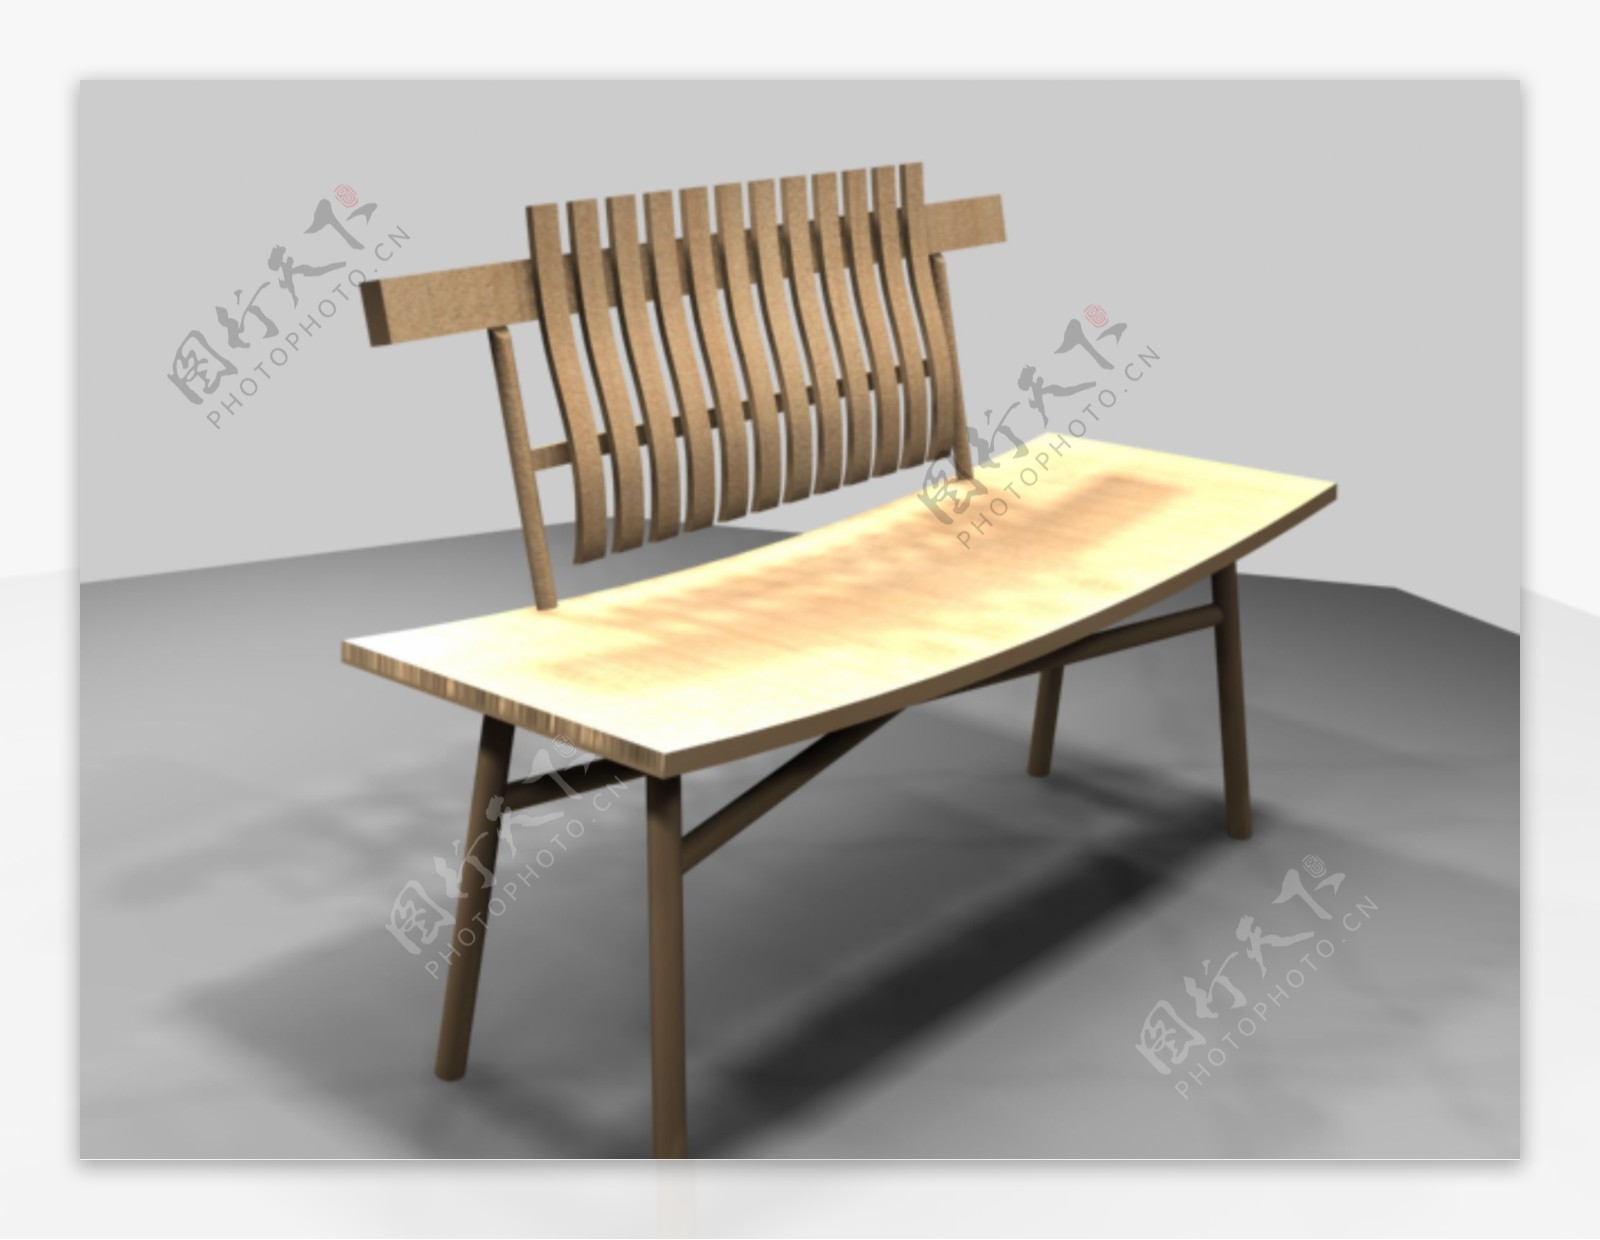 公装家具之公共座椅0133D模型